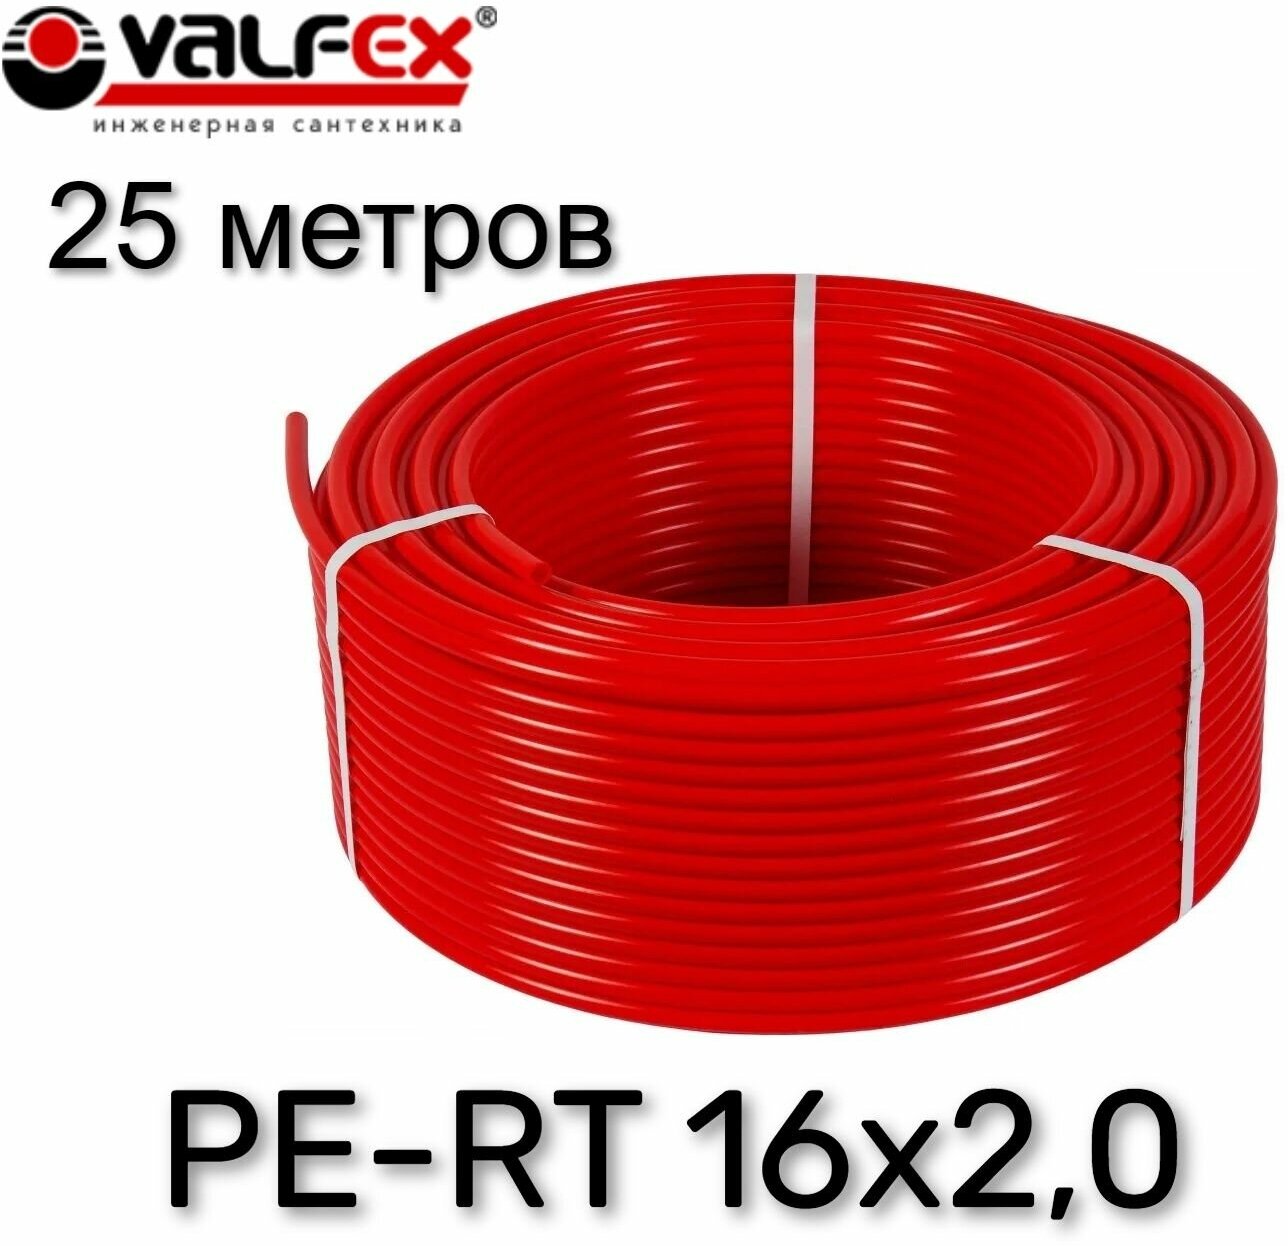 Труба из сшитого полиэтилена для теплого пола VALFEX PE-RT 25 метров 16х2,0 (красная)